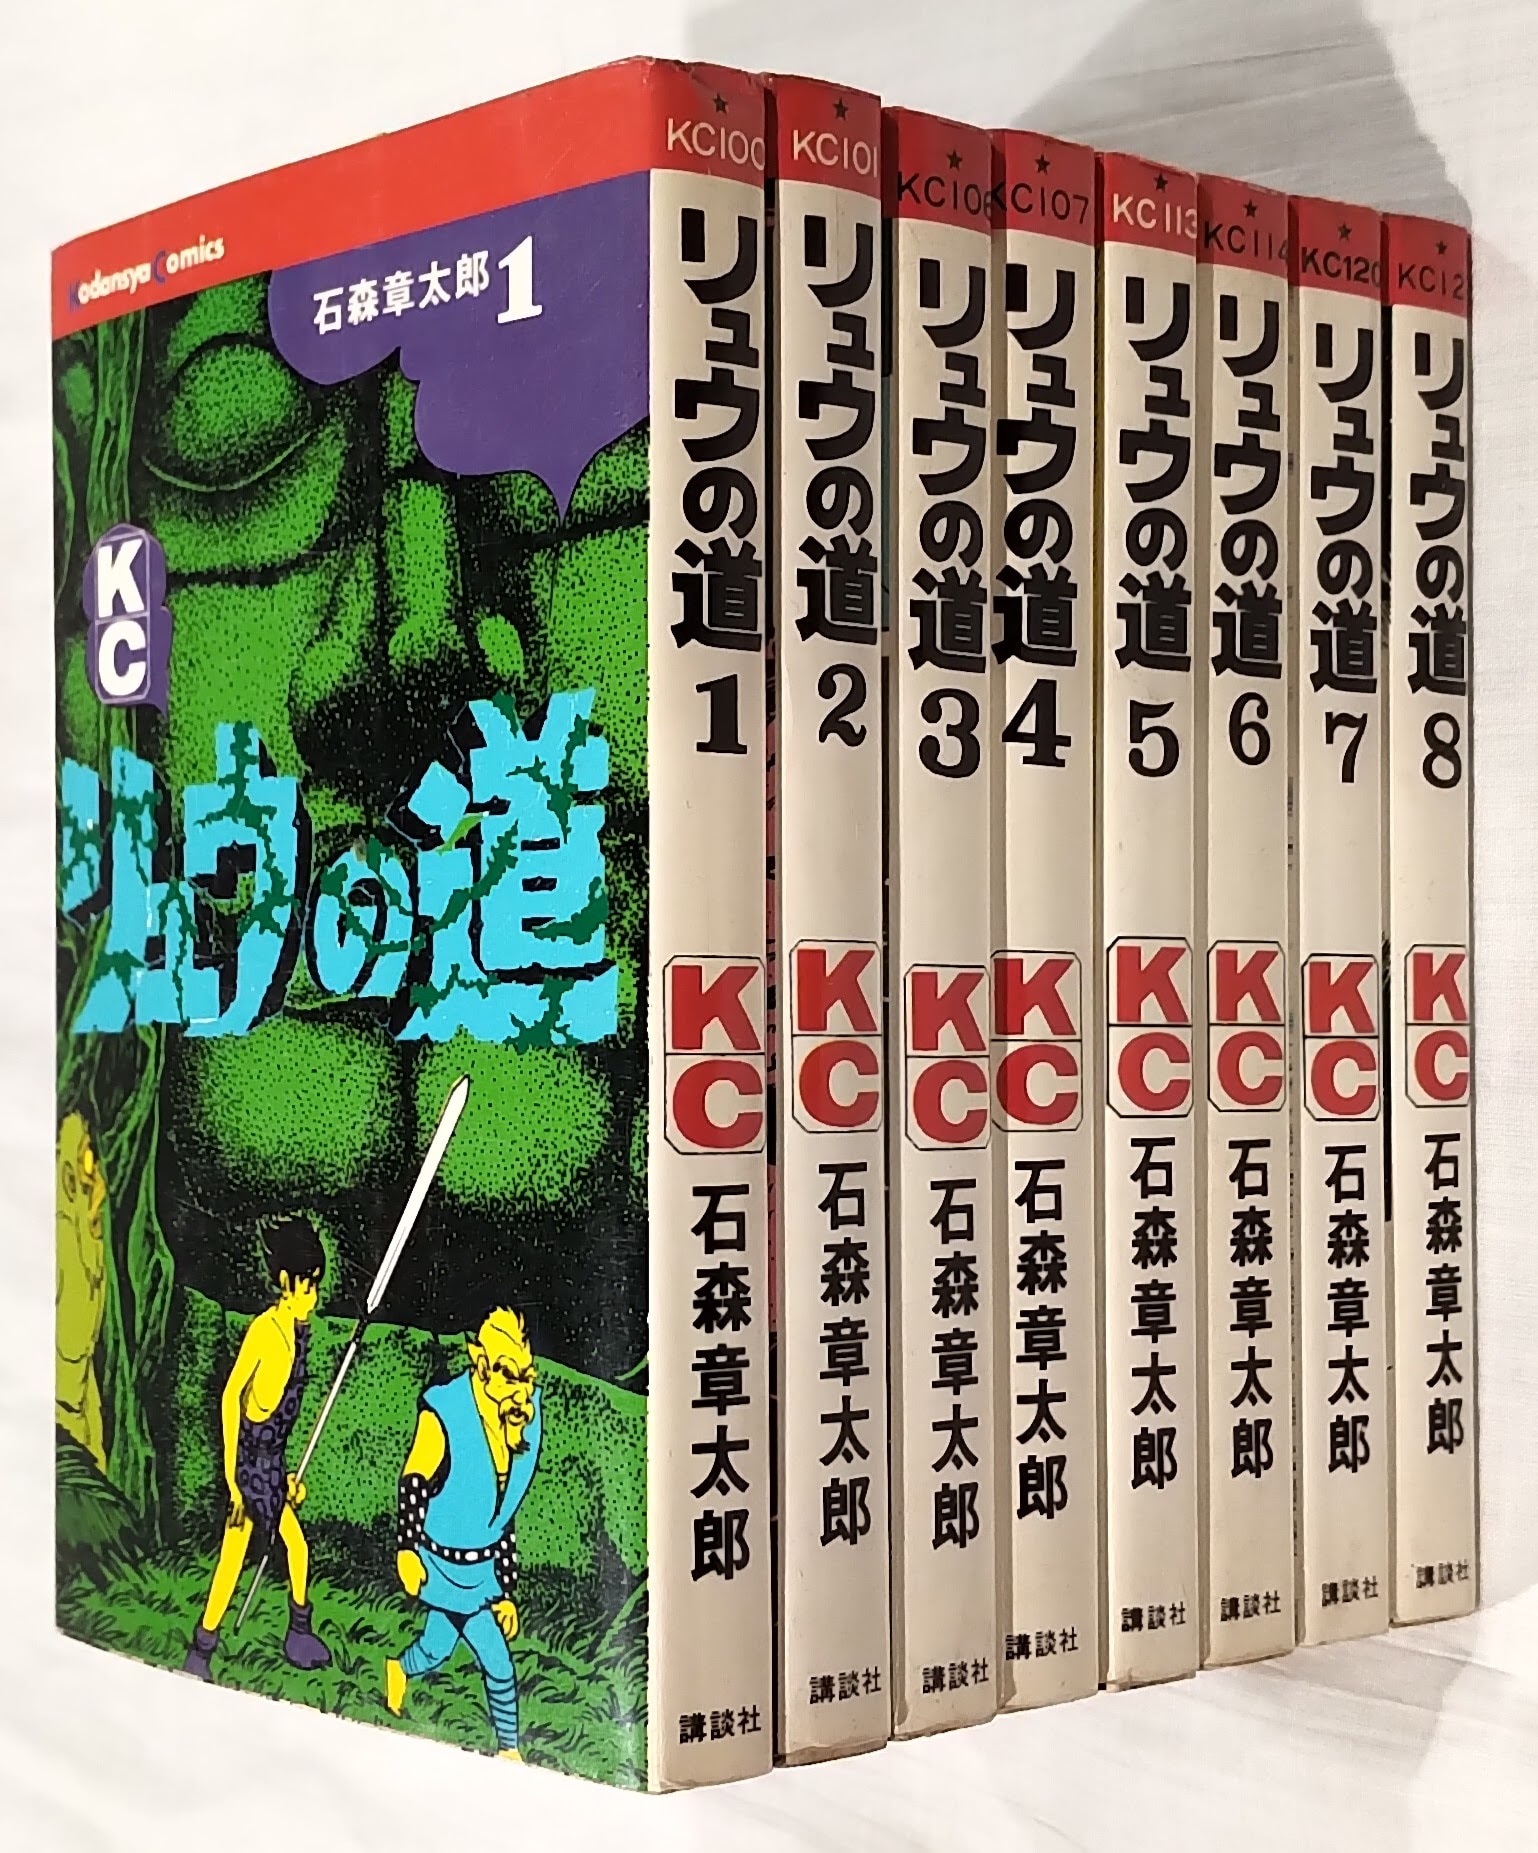 講談社 マガジンKC(旧マーク) 石森章太郎 リュウの道 全8巻 再版セット